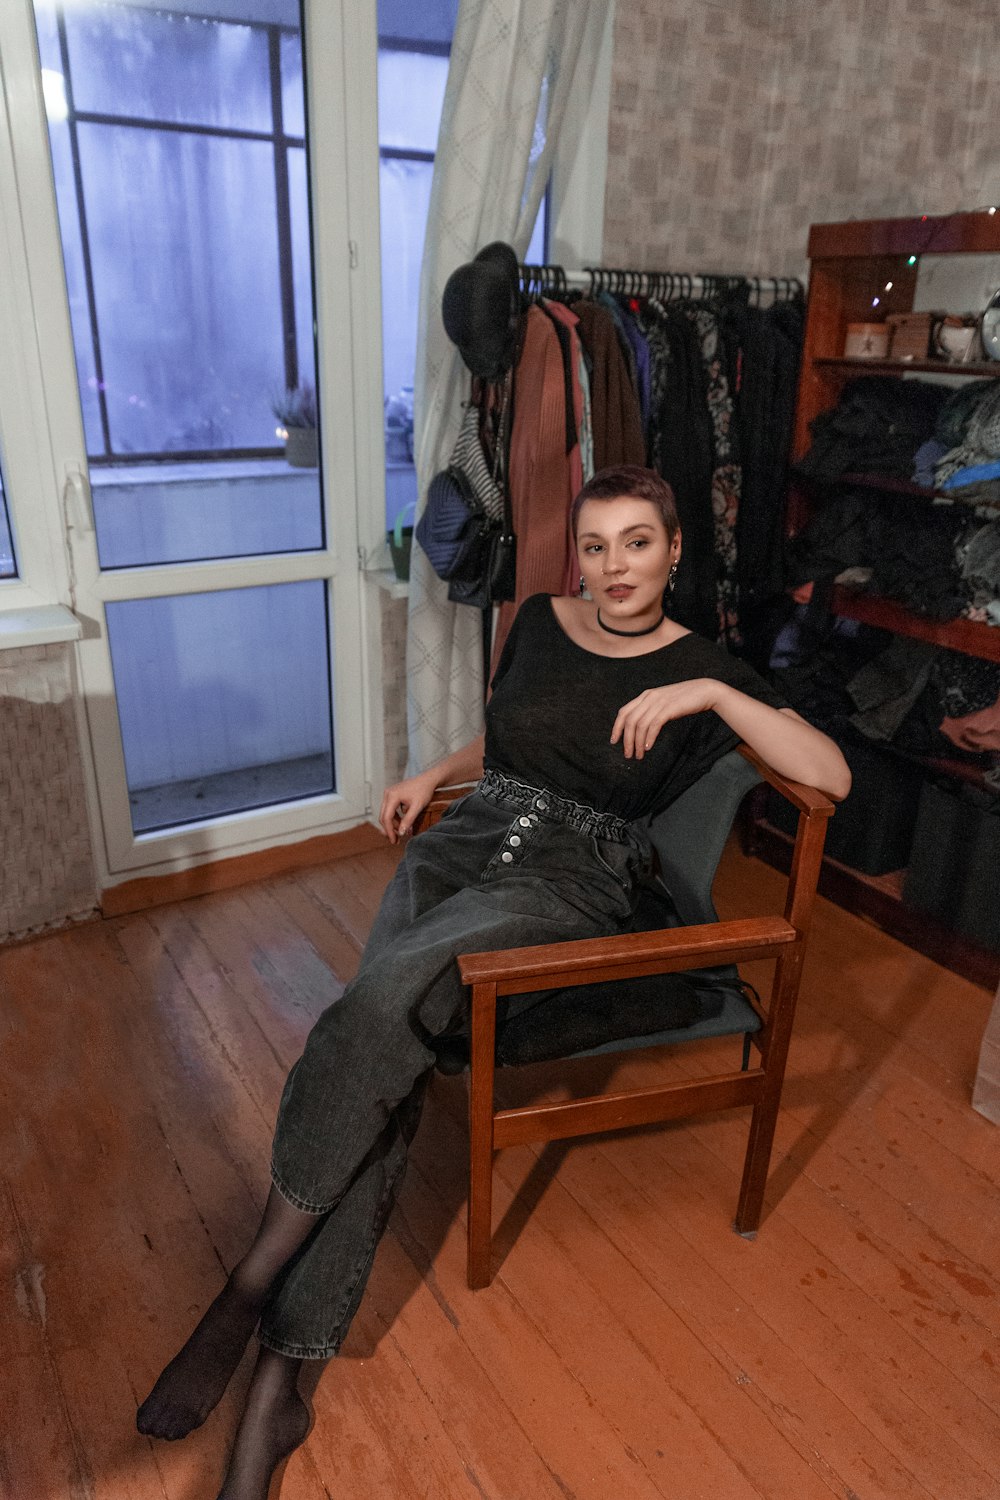 Una mujer sentada en una silla en una habitación